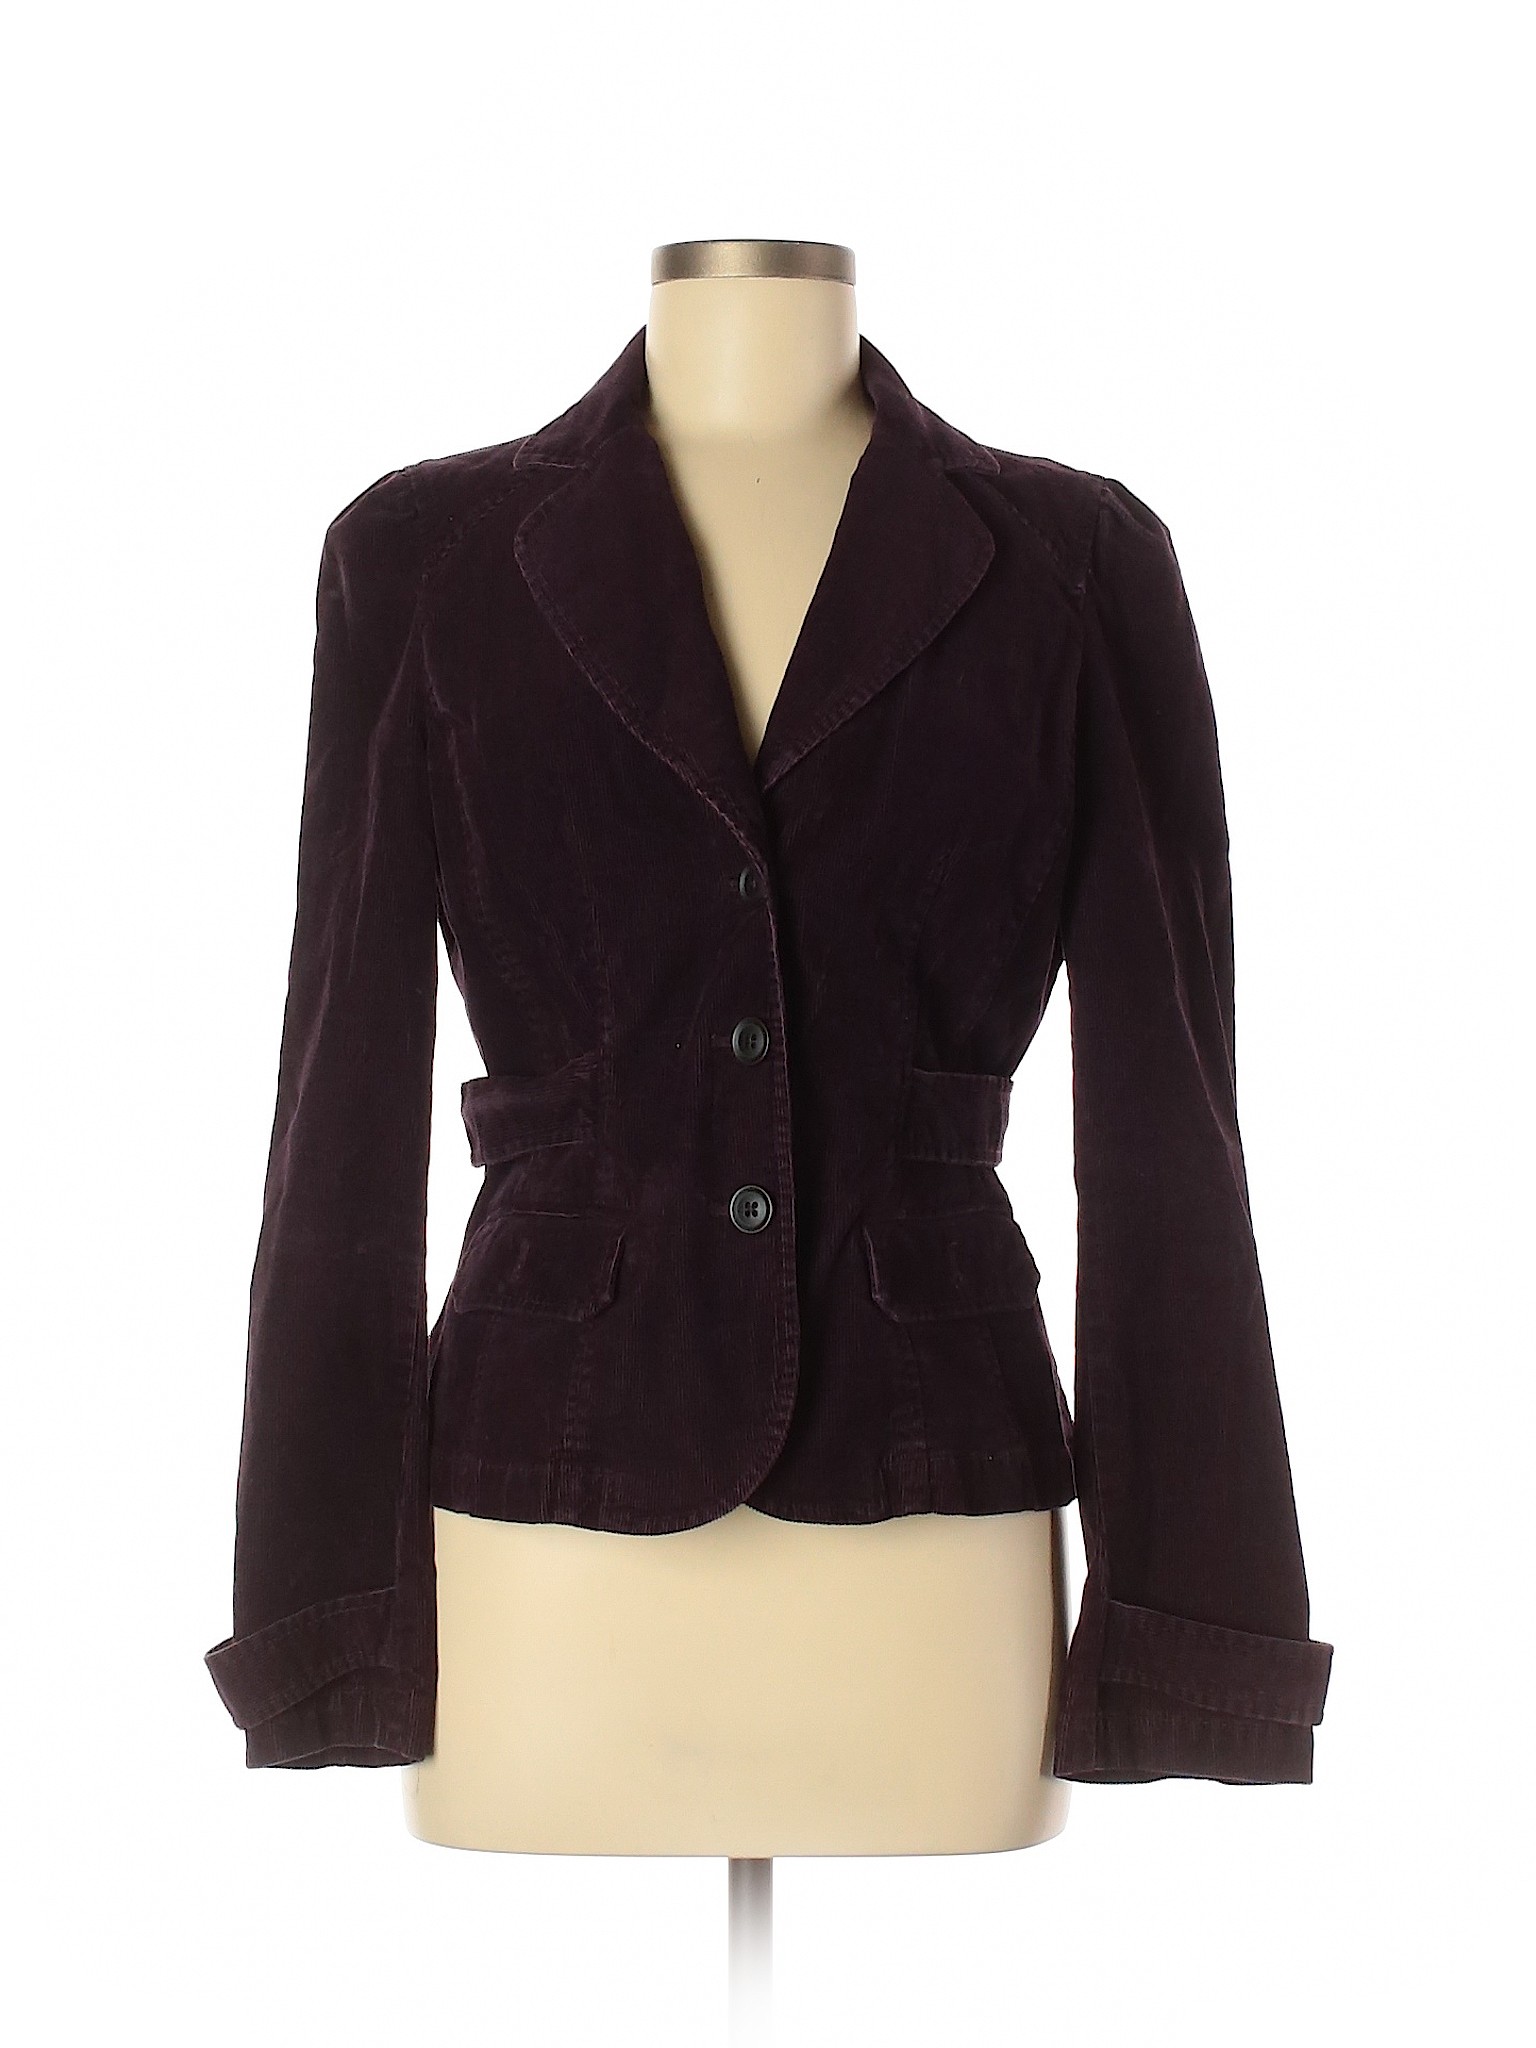 Ann Taylor LOFT Women Purple Jacket 6 | eBay